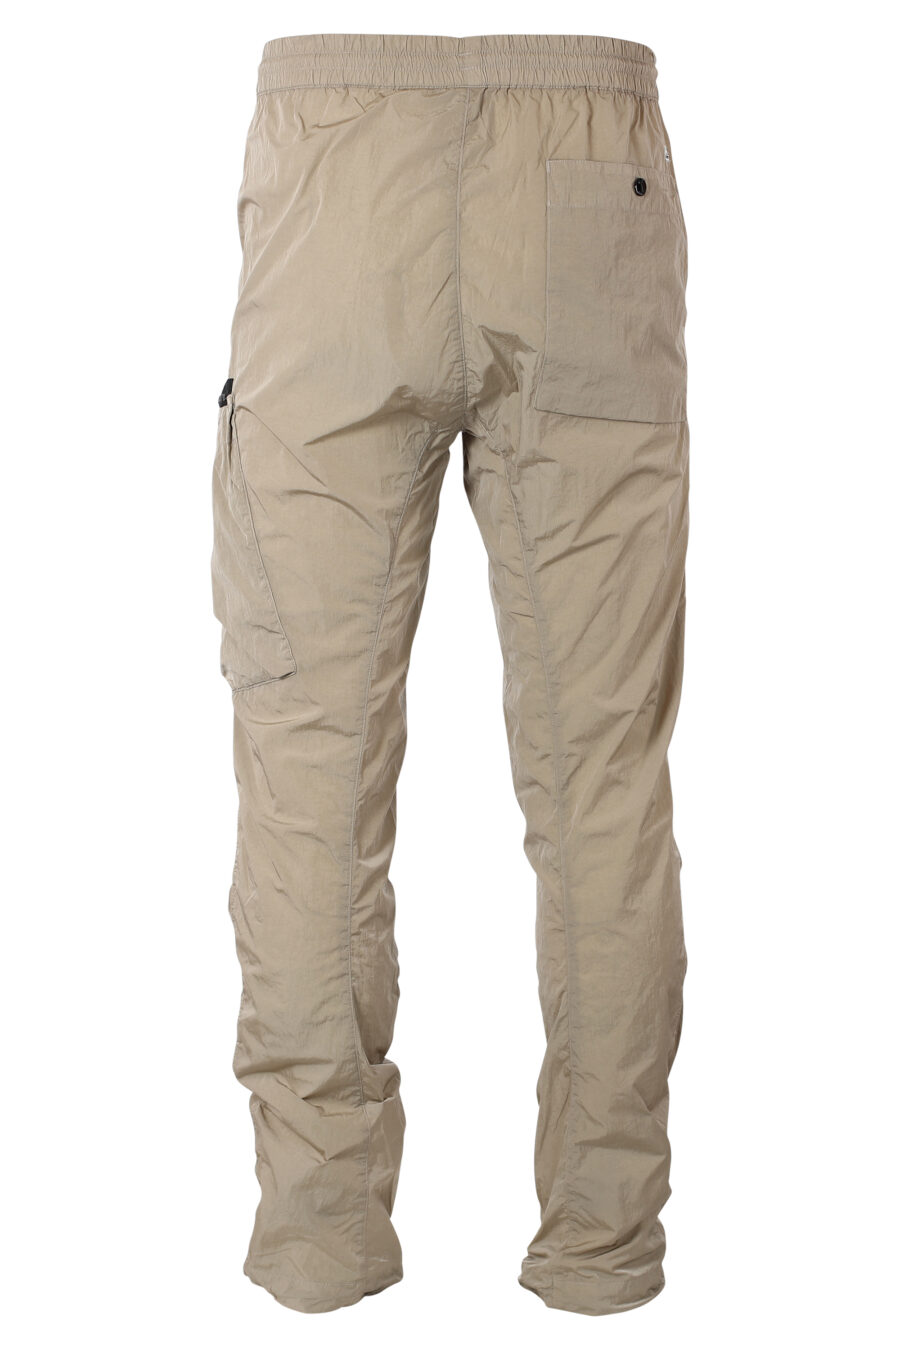 Pantalon beige avec poche latérale diagonale et mini-logo circulaire - IMG 9938